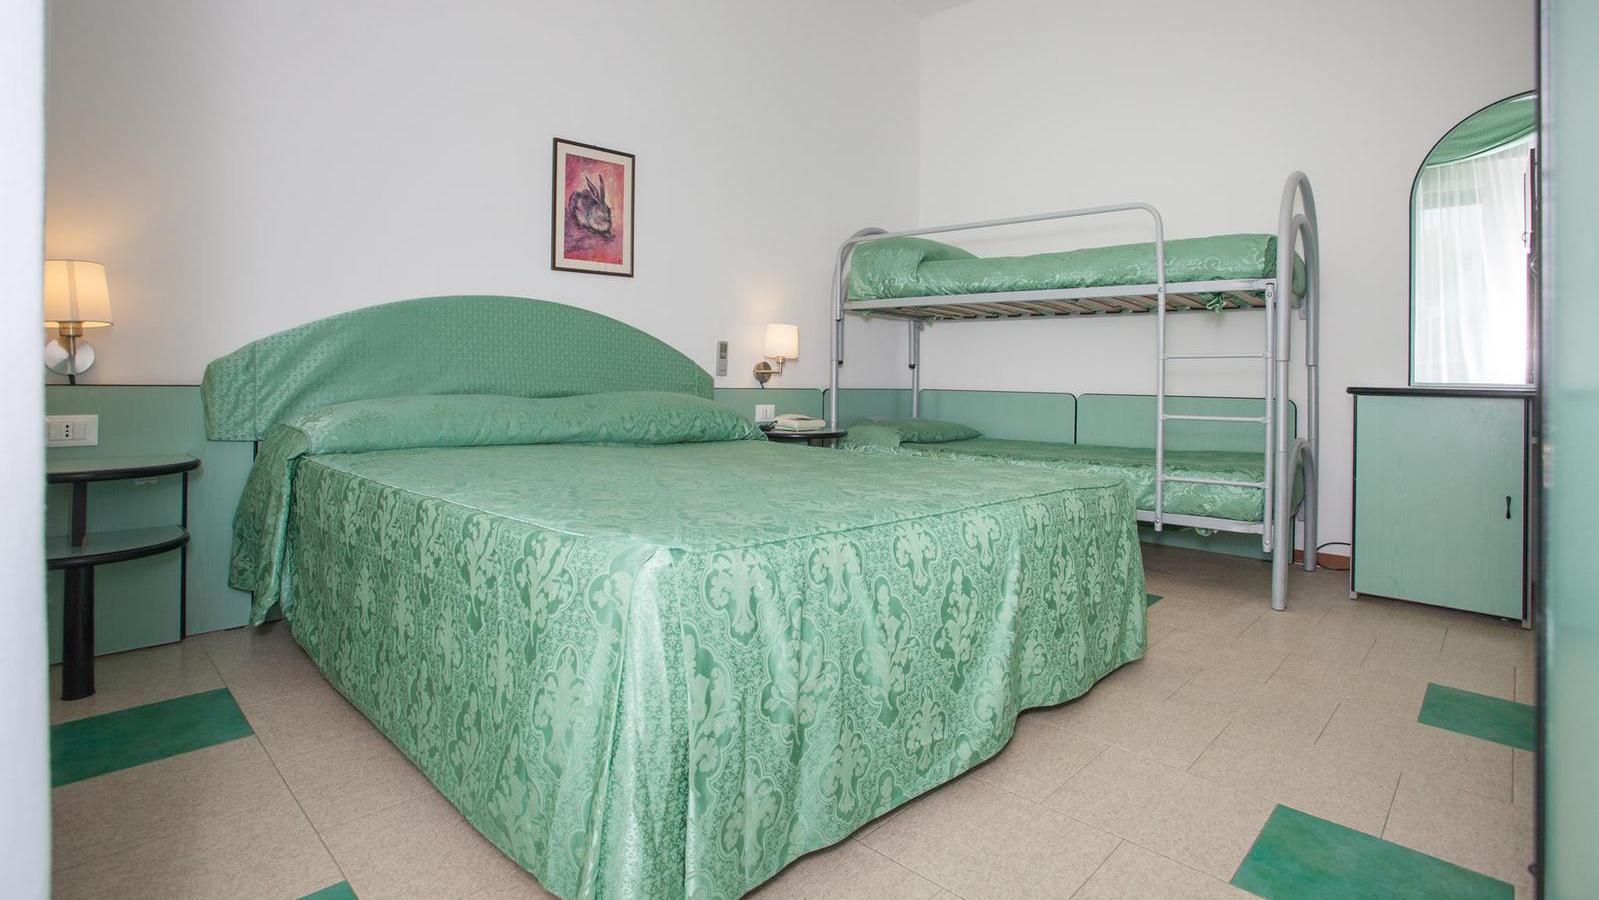 Dove dormire a Peschici - Hotel Paglianza Paradiso | Localtourism.it